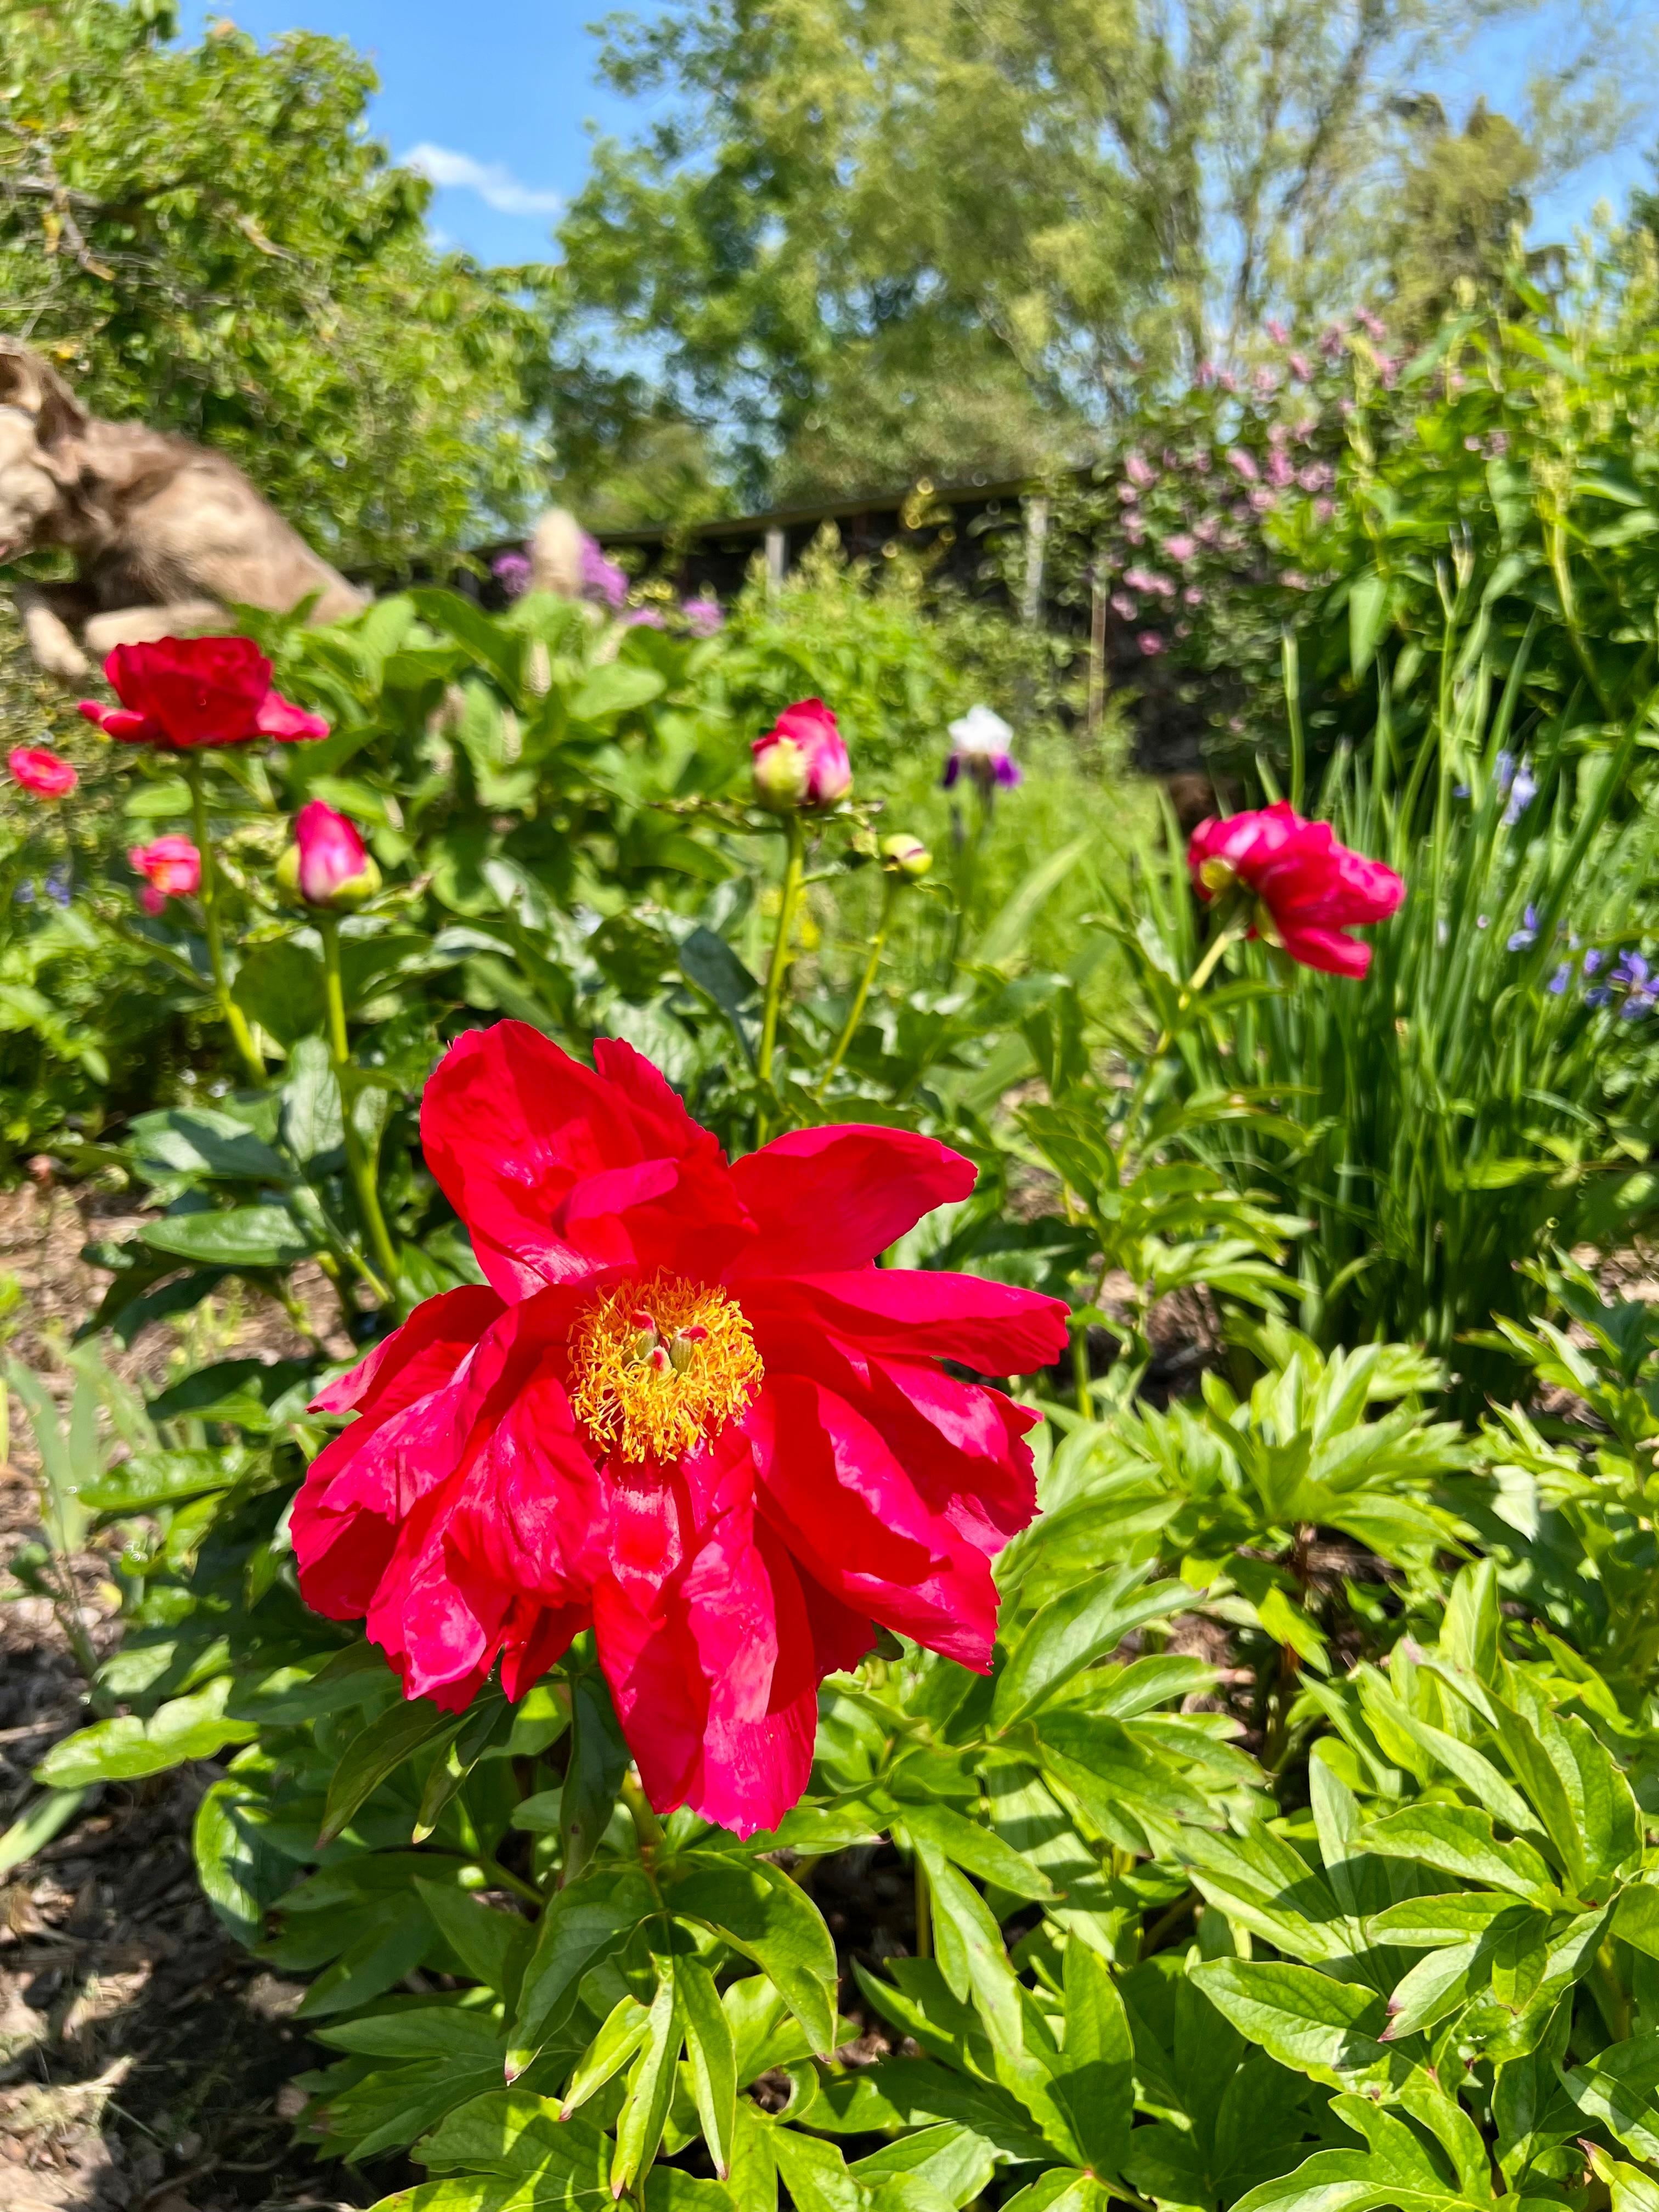 #Pfingstrosen #Landleben  #Blumenbeet #Natur 🐝🌞 #Landhausgarten und oben links ein Flughund 😂